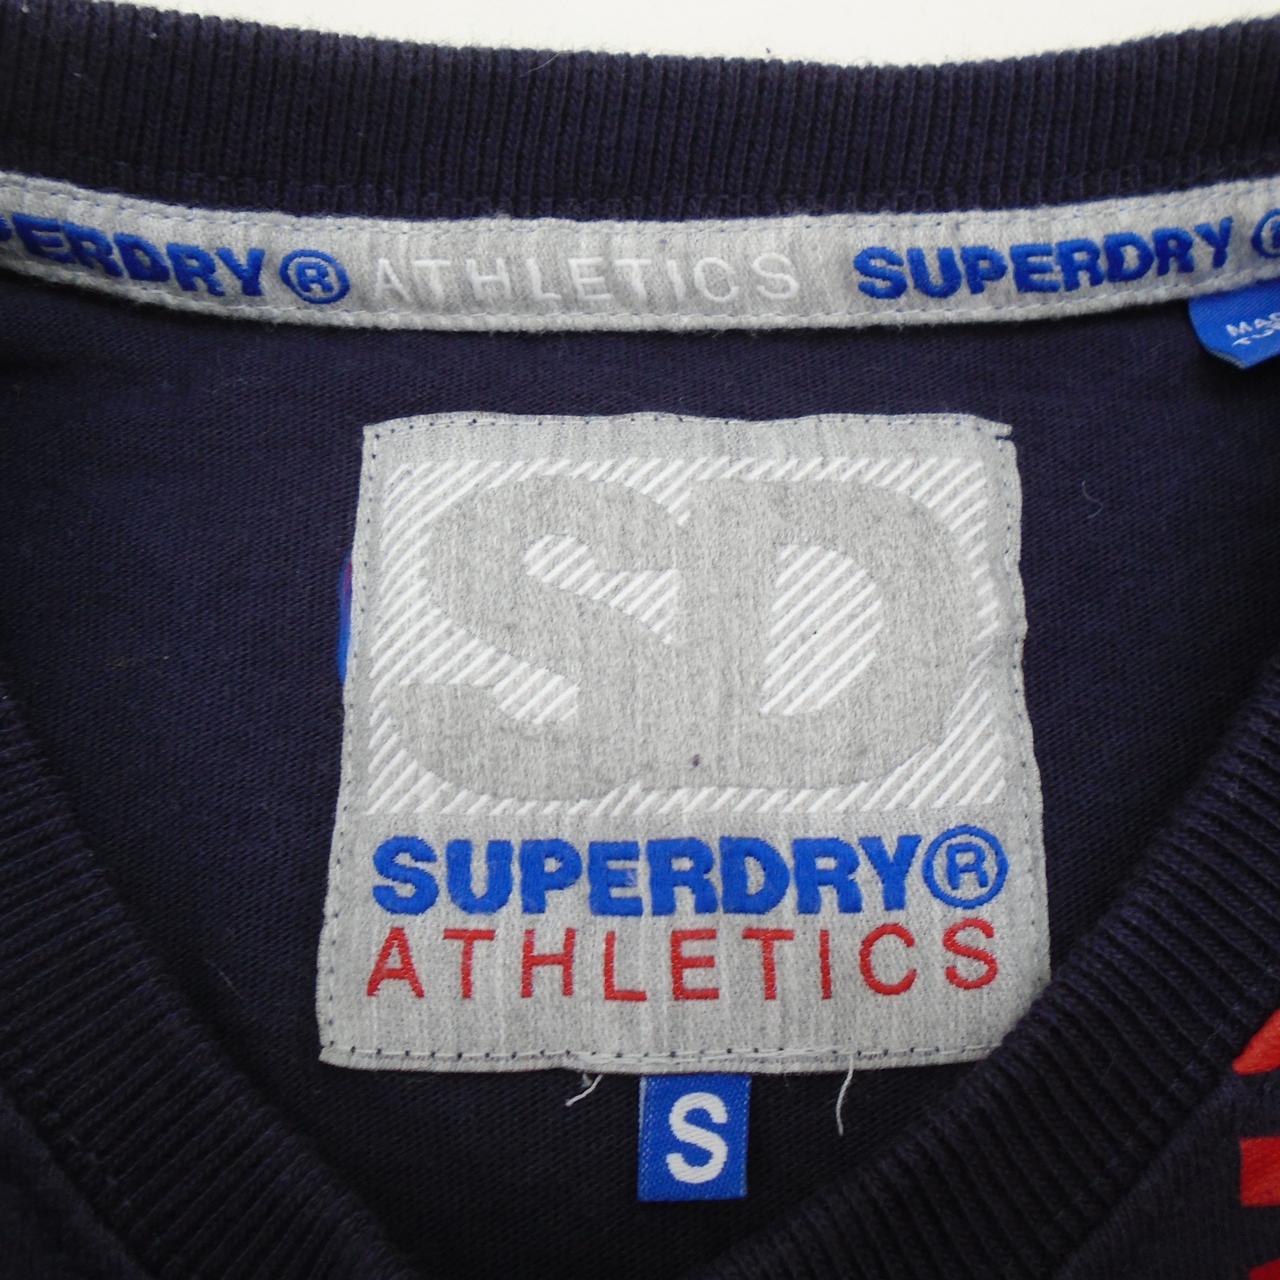 Camiseta de Superdry para hombre. Azul oscuro. S. Usado. Muy bien